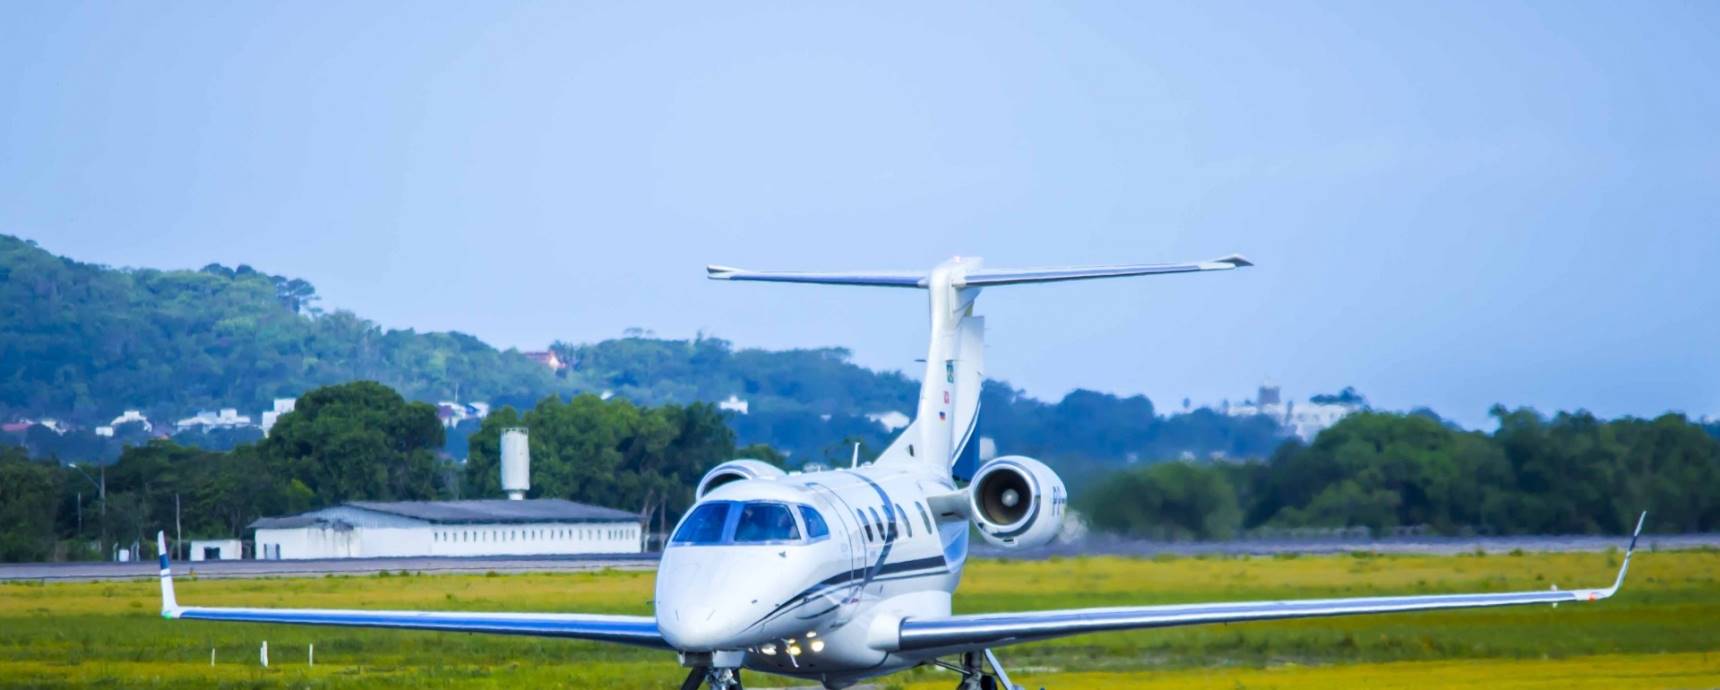 Floripa Airport Executive Service: descubre el servicio exclusivo para tripulantes y pasajeros de aviación ejecutiva